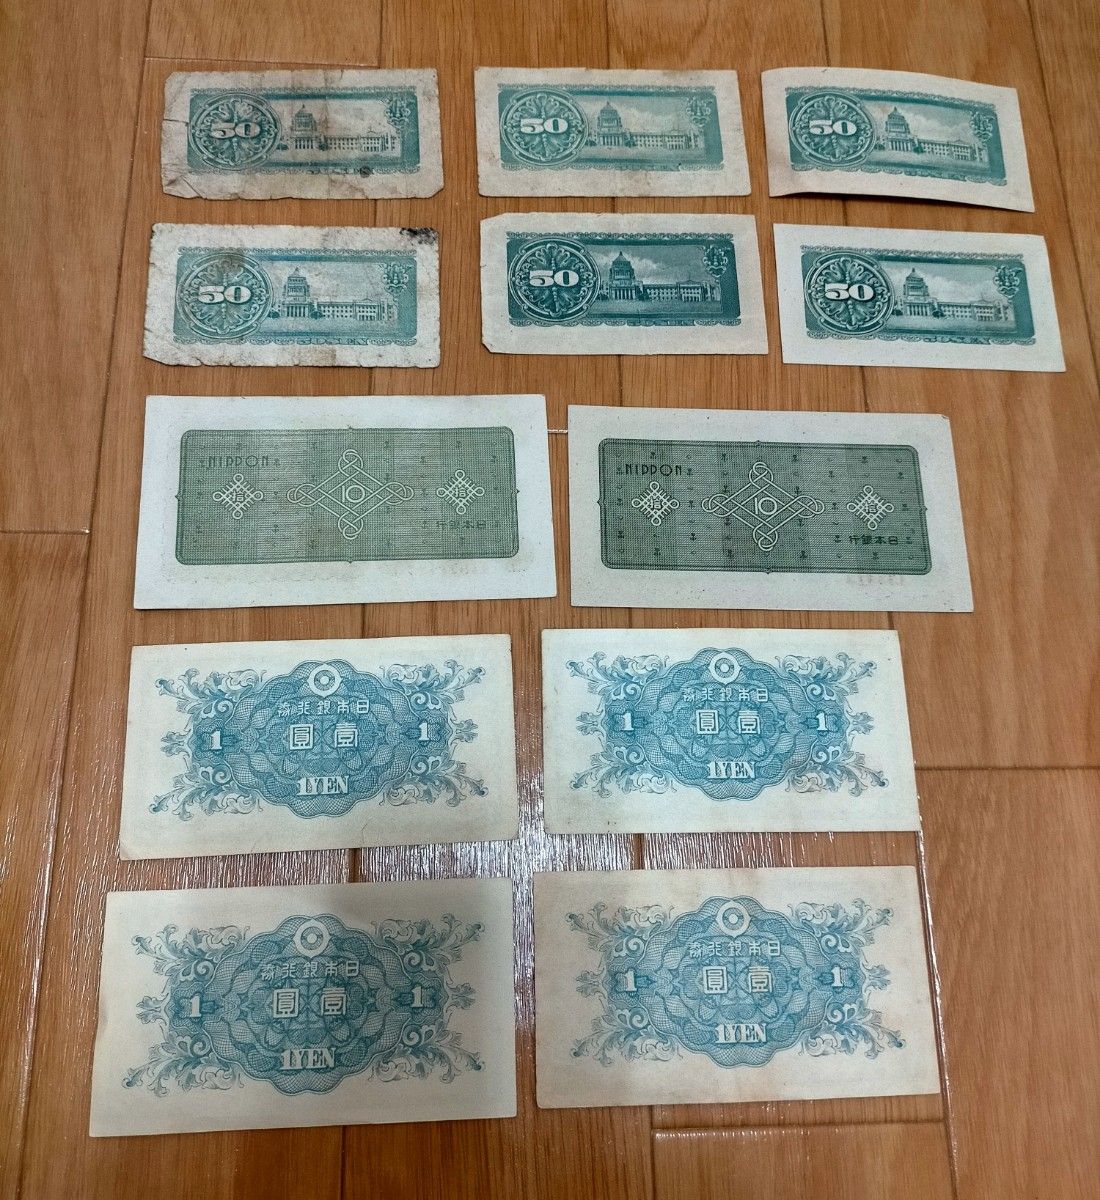 旧紙幣 10円札 1 円札 50銭札